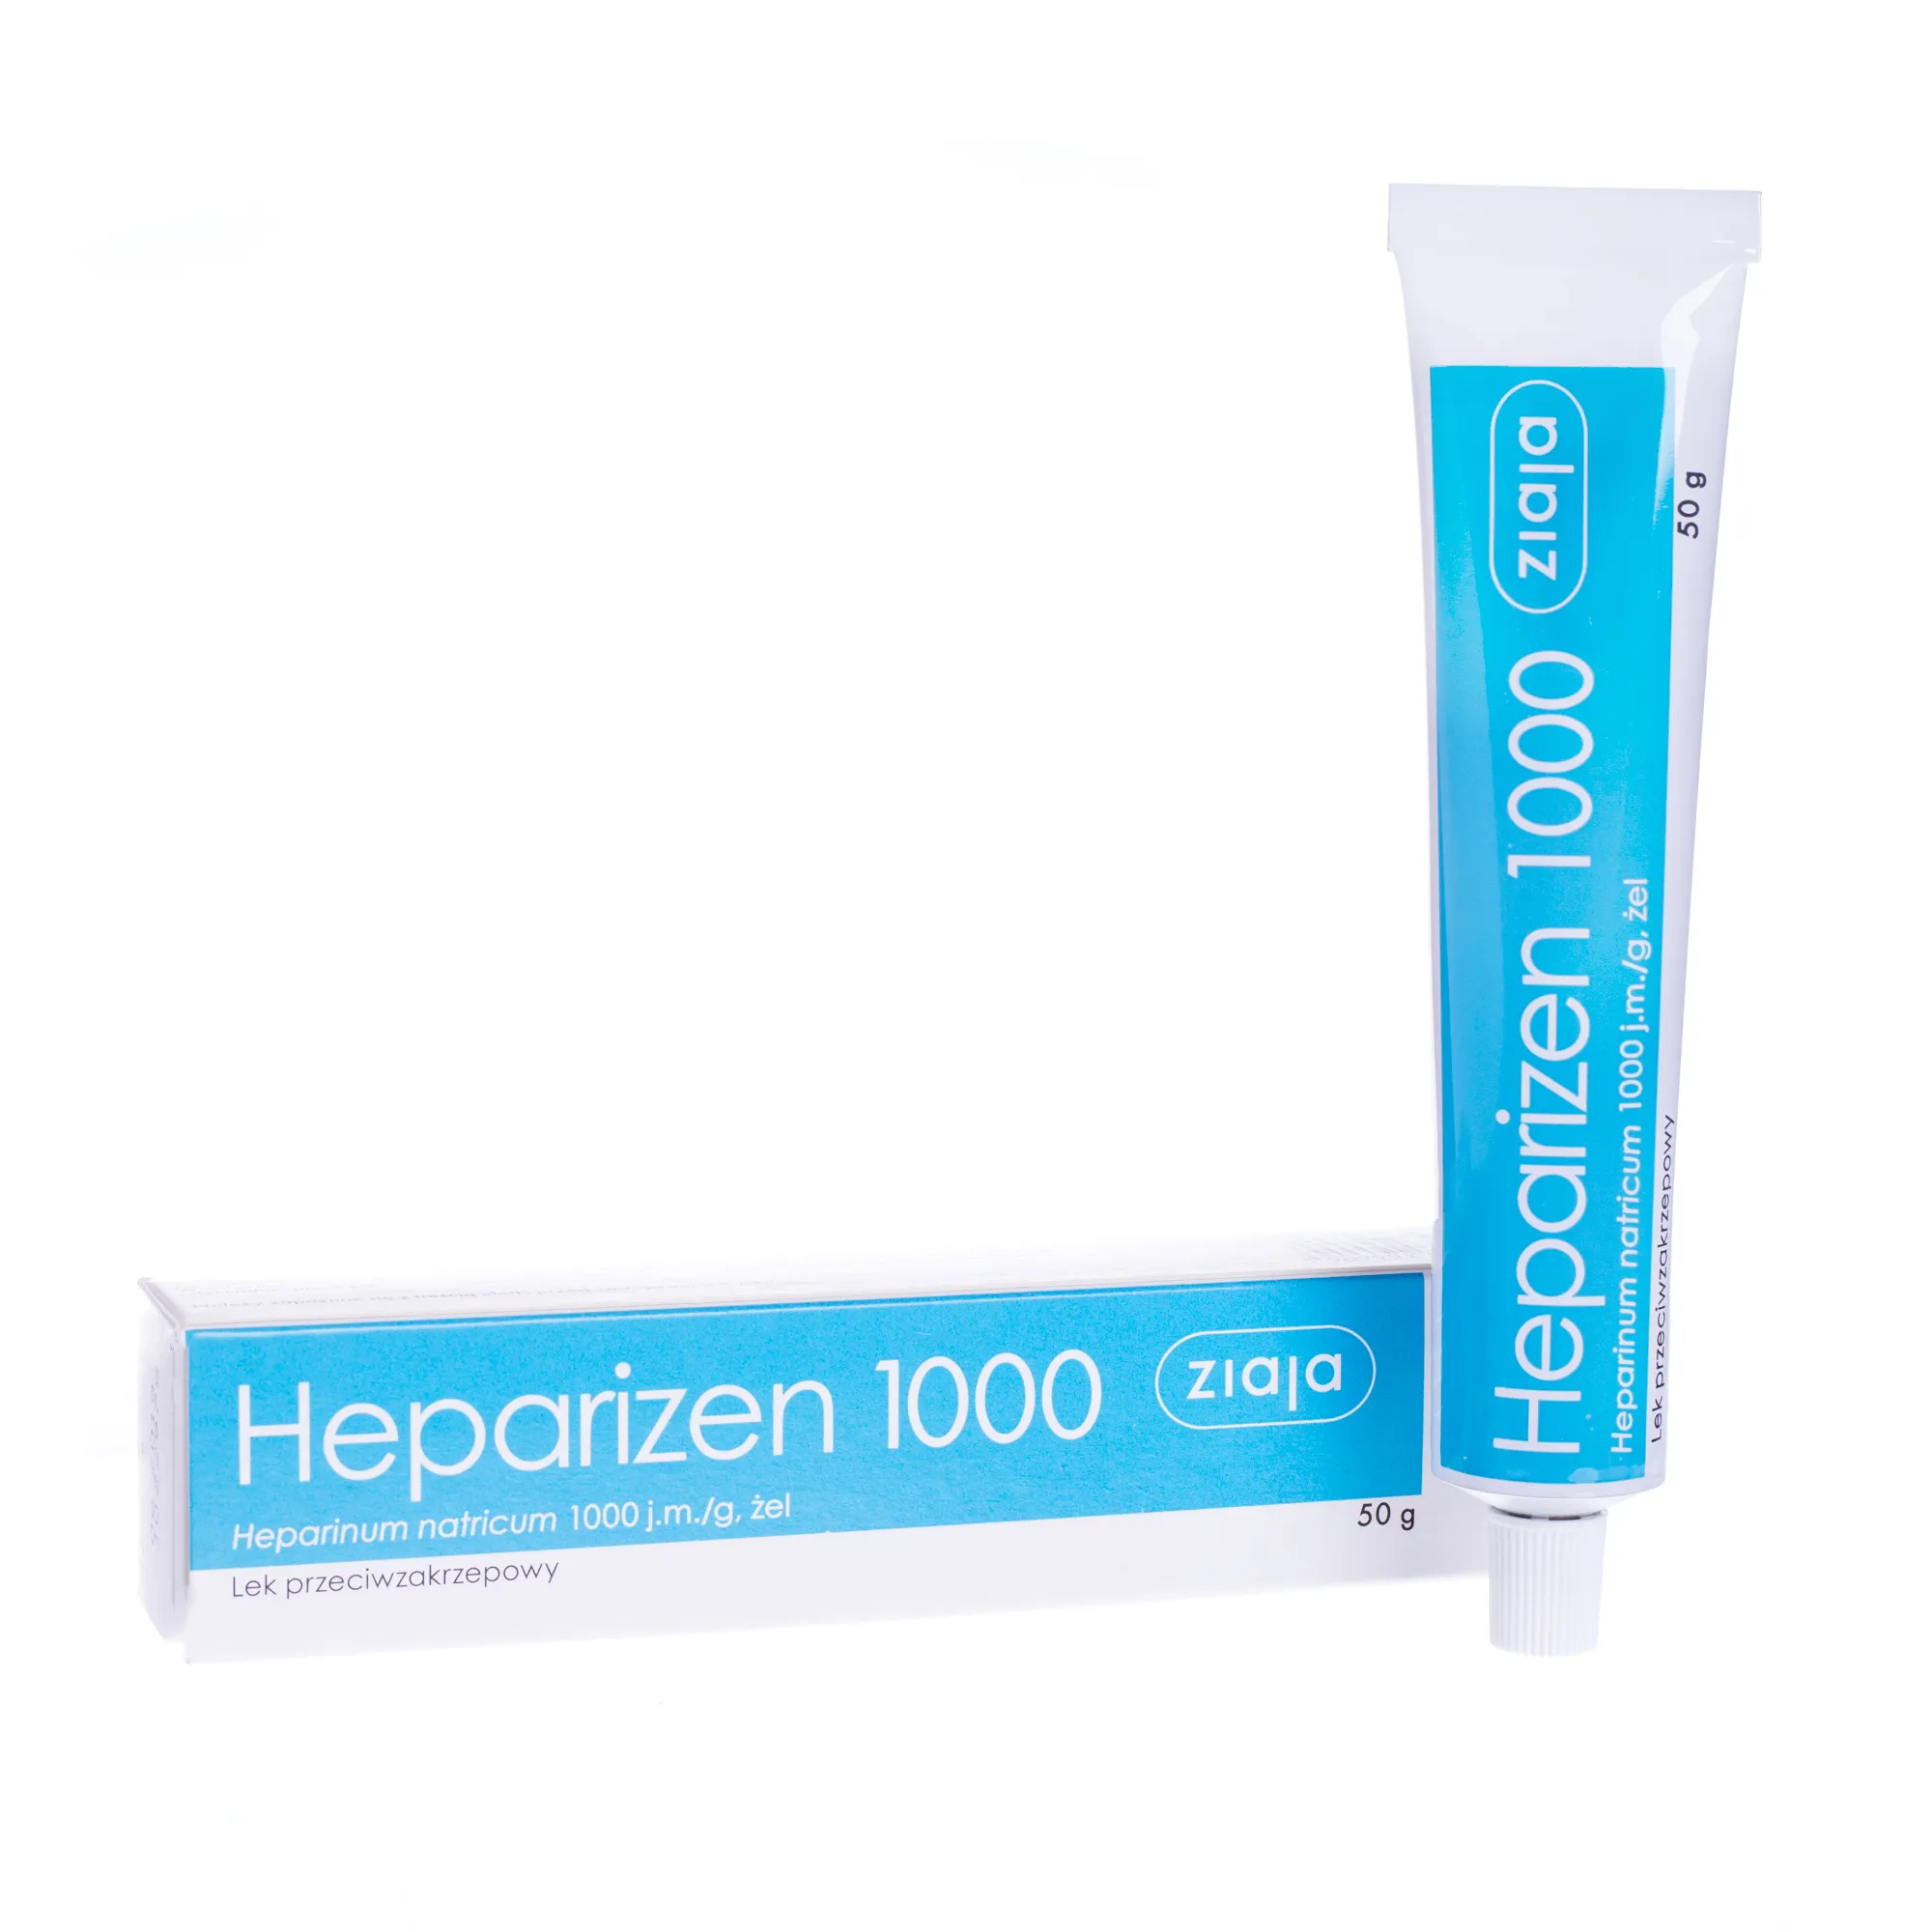 Heparizen 1000, (1000 j.m./g), żel, 50 g 